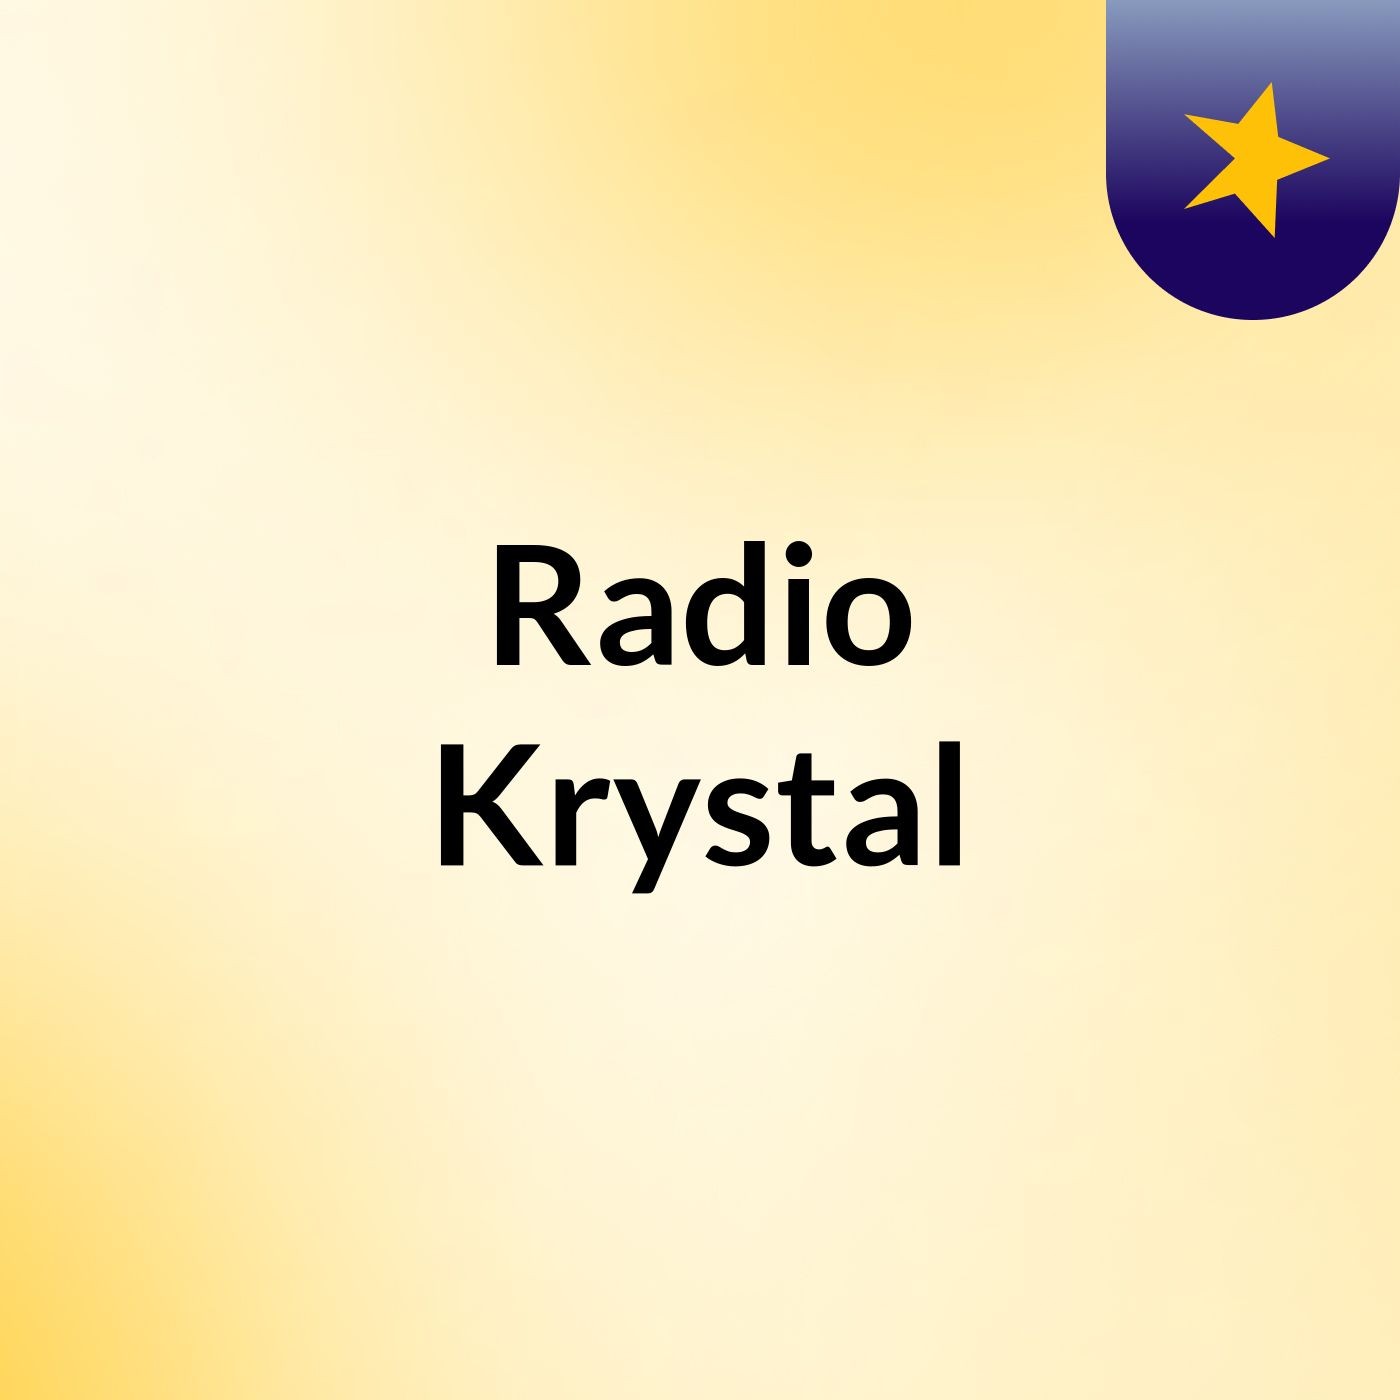 Radio krystal